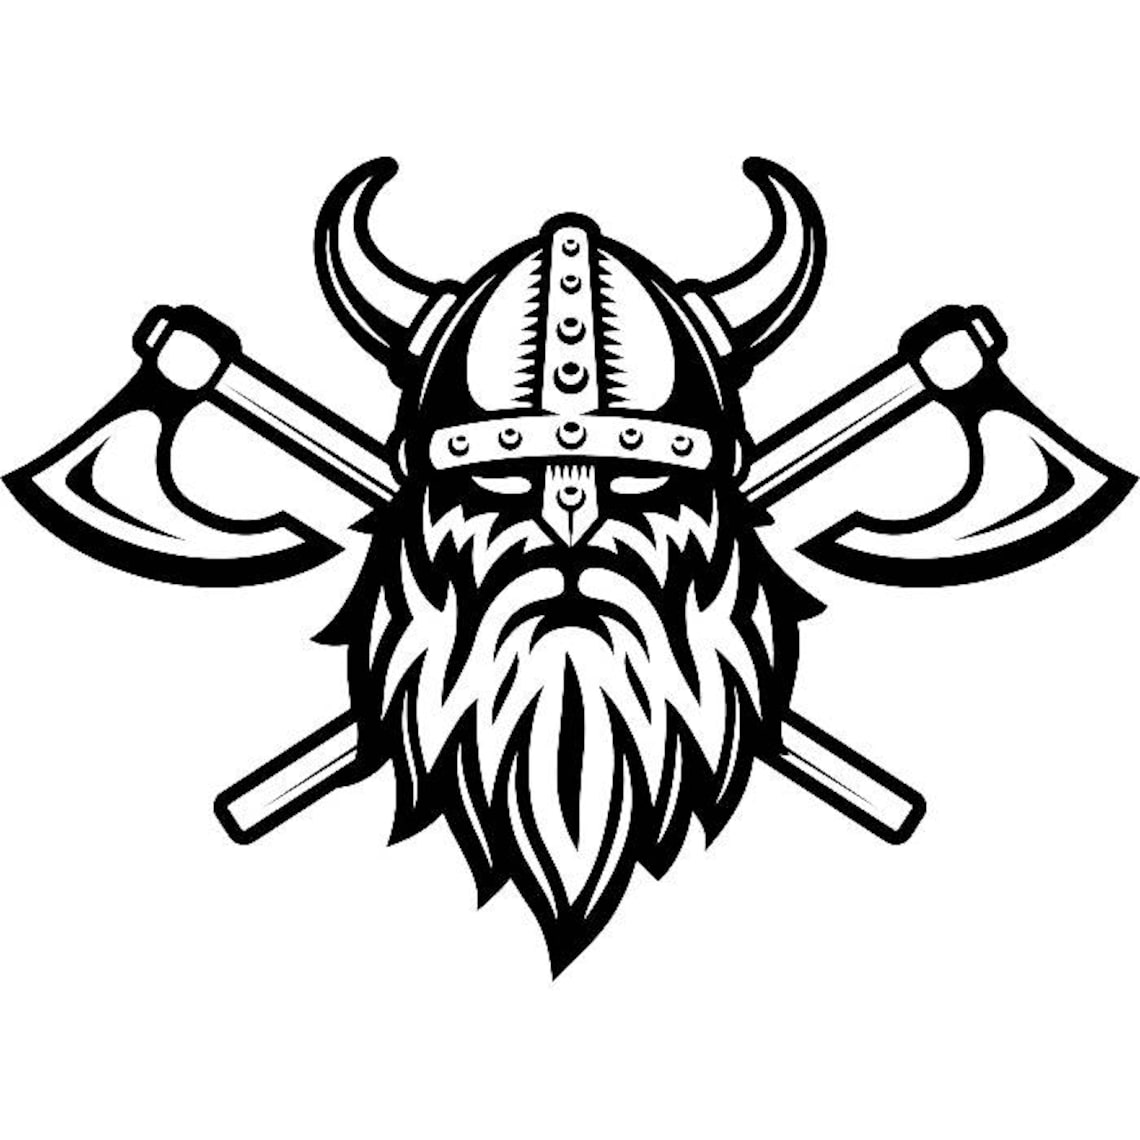 Viking Logo 5 Skull Helmet Horns Axes Ship Warrior Barbarian | Etsy